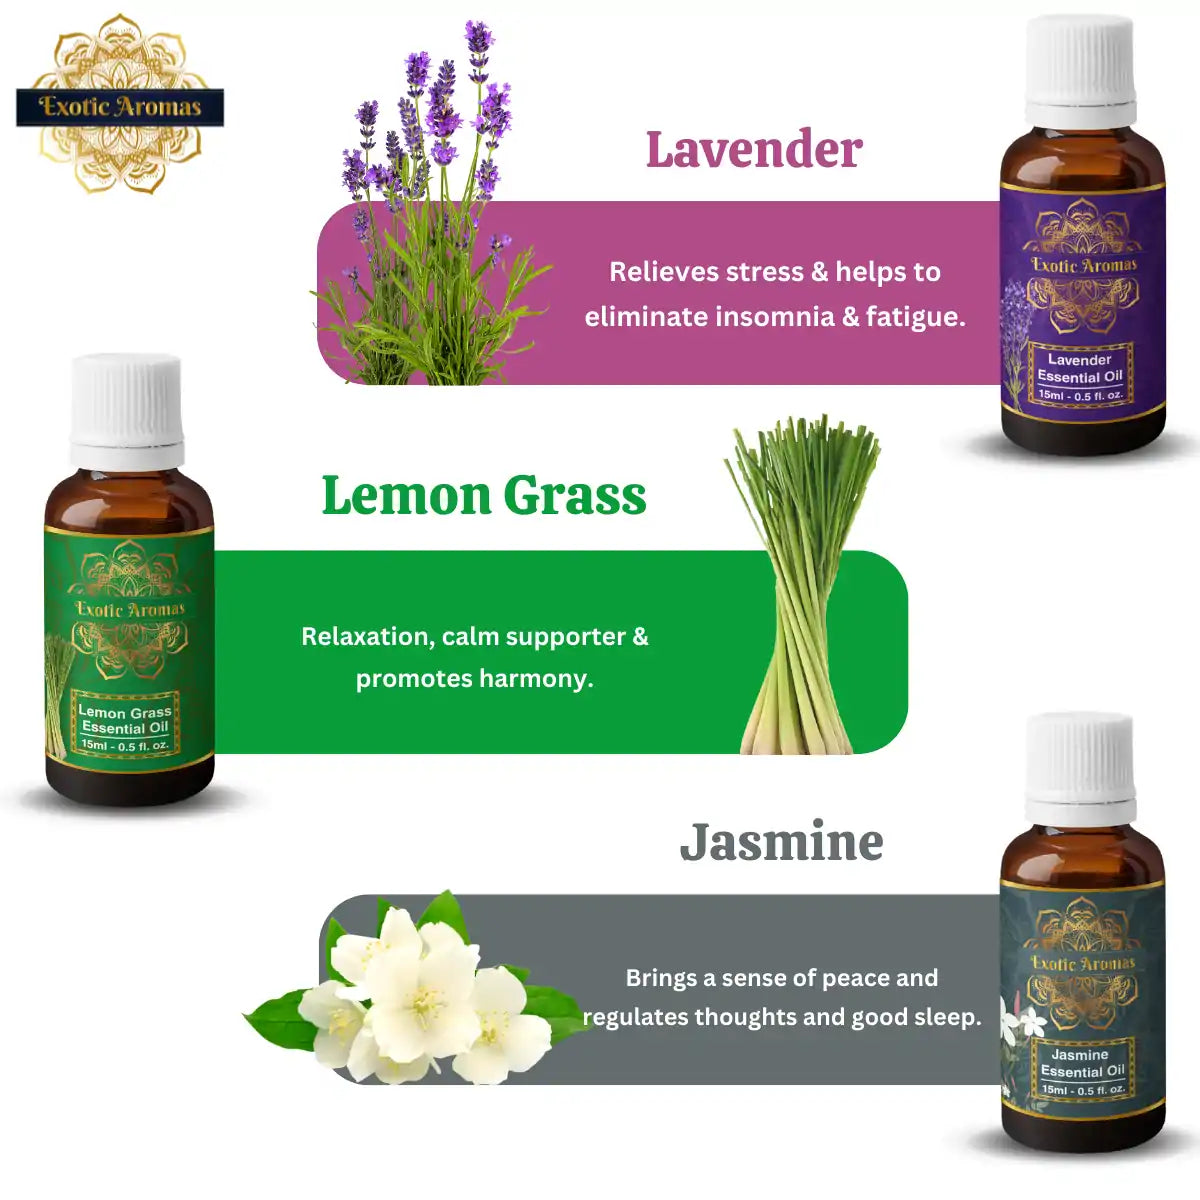 Essential Oil Pack of 12 Lavender Rose Tea Tree Rosemary Jasmine YlangYlang Eucalyptus Mandarin Lemongrass Peppermint lemon citronella